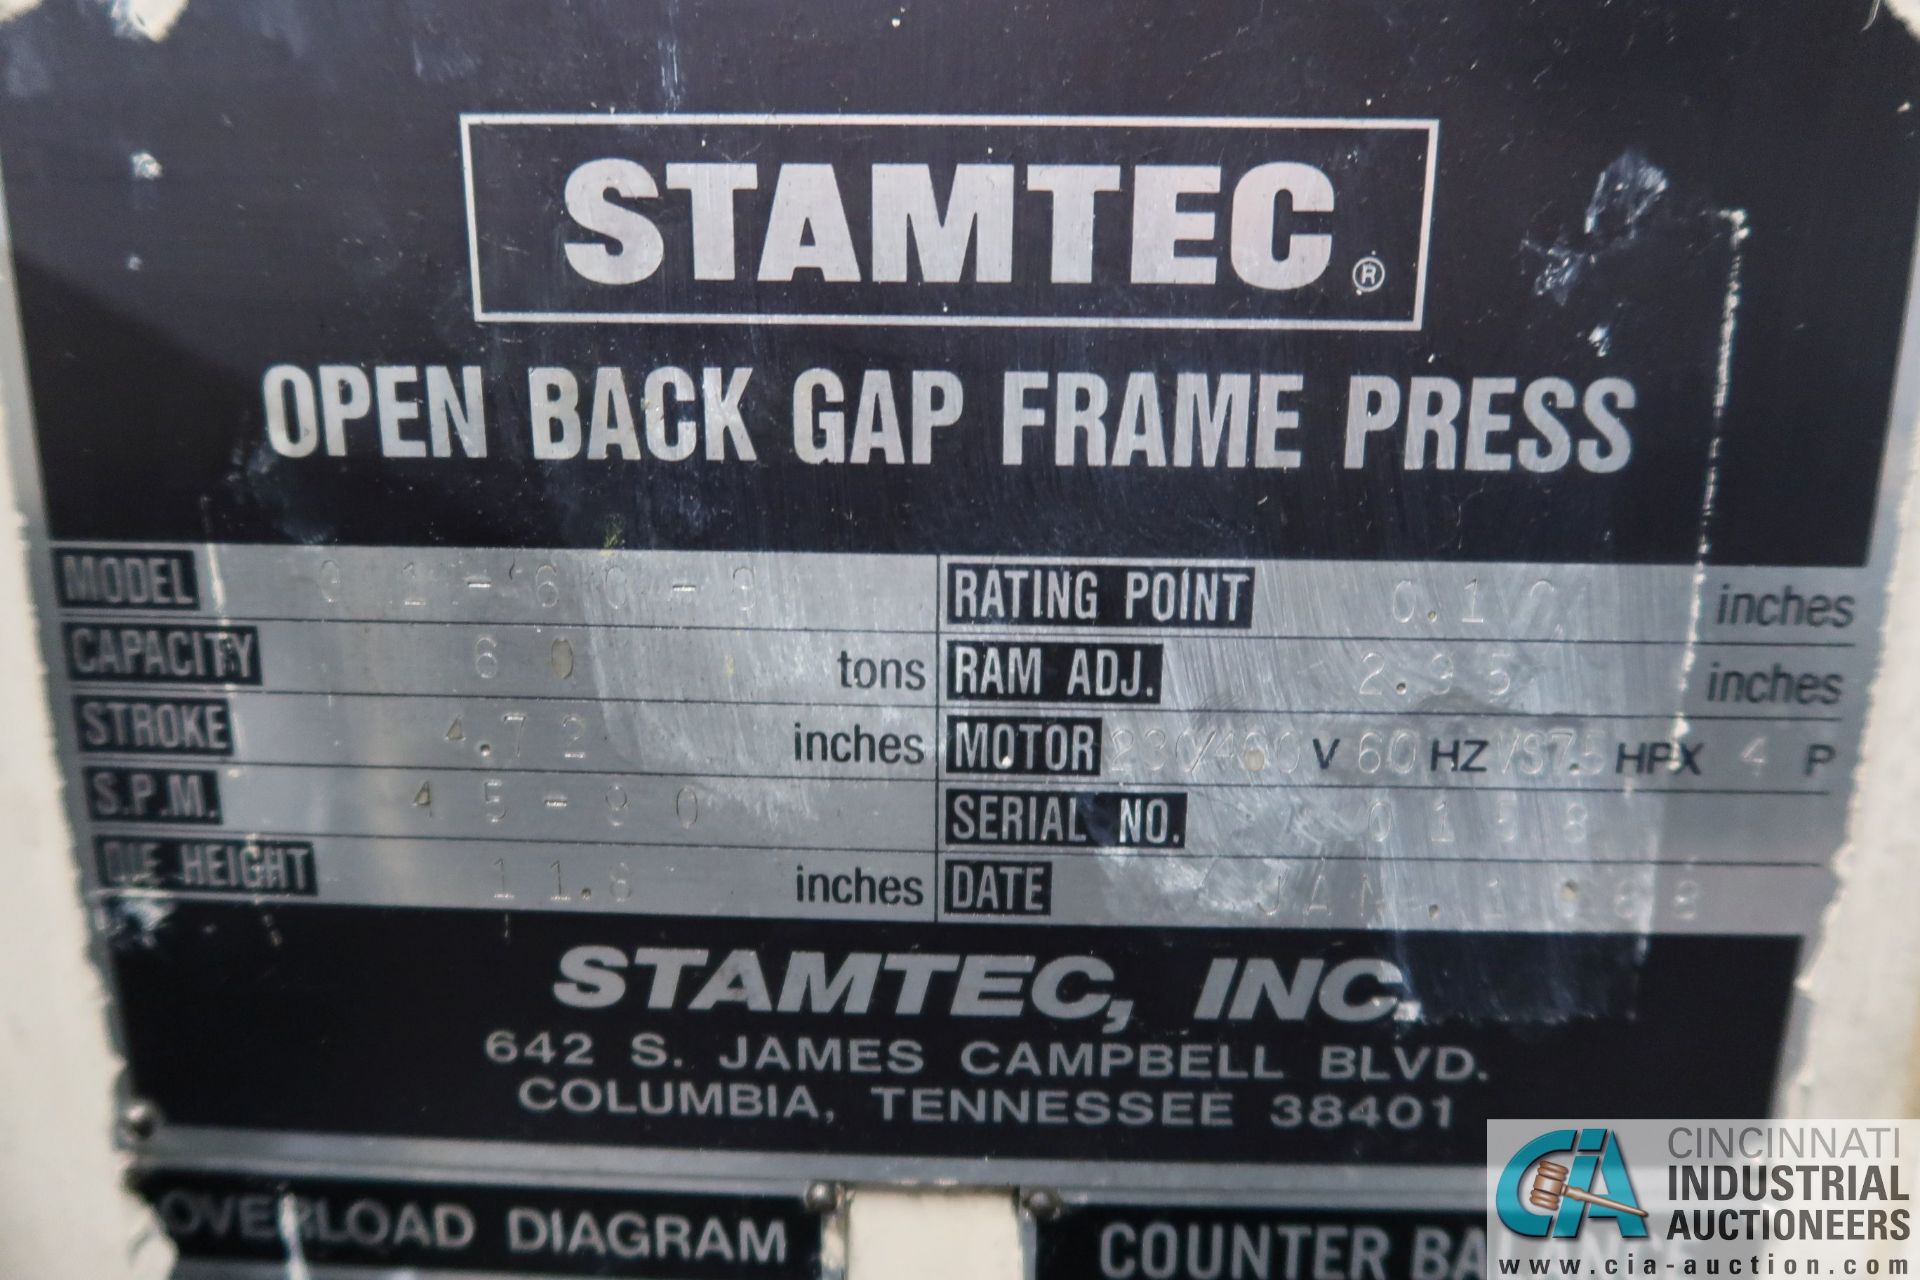 66 TON STAMTEC MODEL G1-60S SINGLE CRANK GAP FRAME PRESS; S/N 0158, 4.72" STROKE, 45-90 STROKES - Image 5 of 18